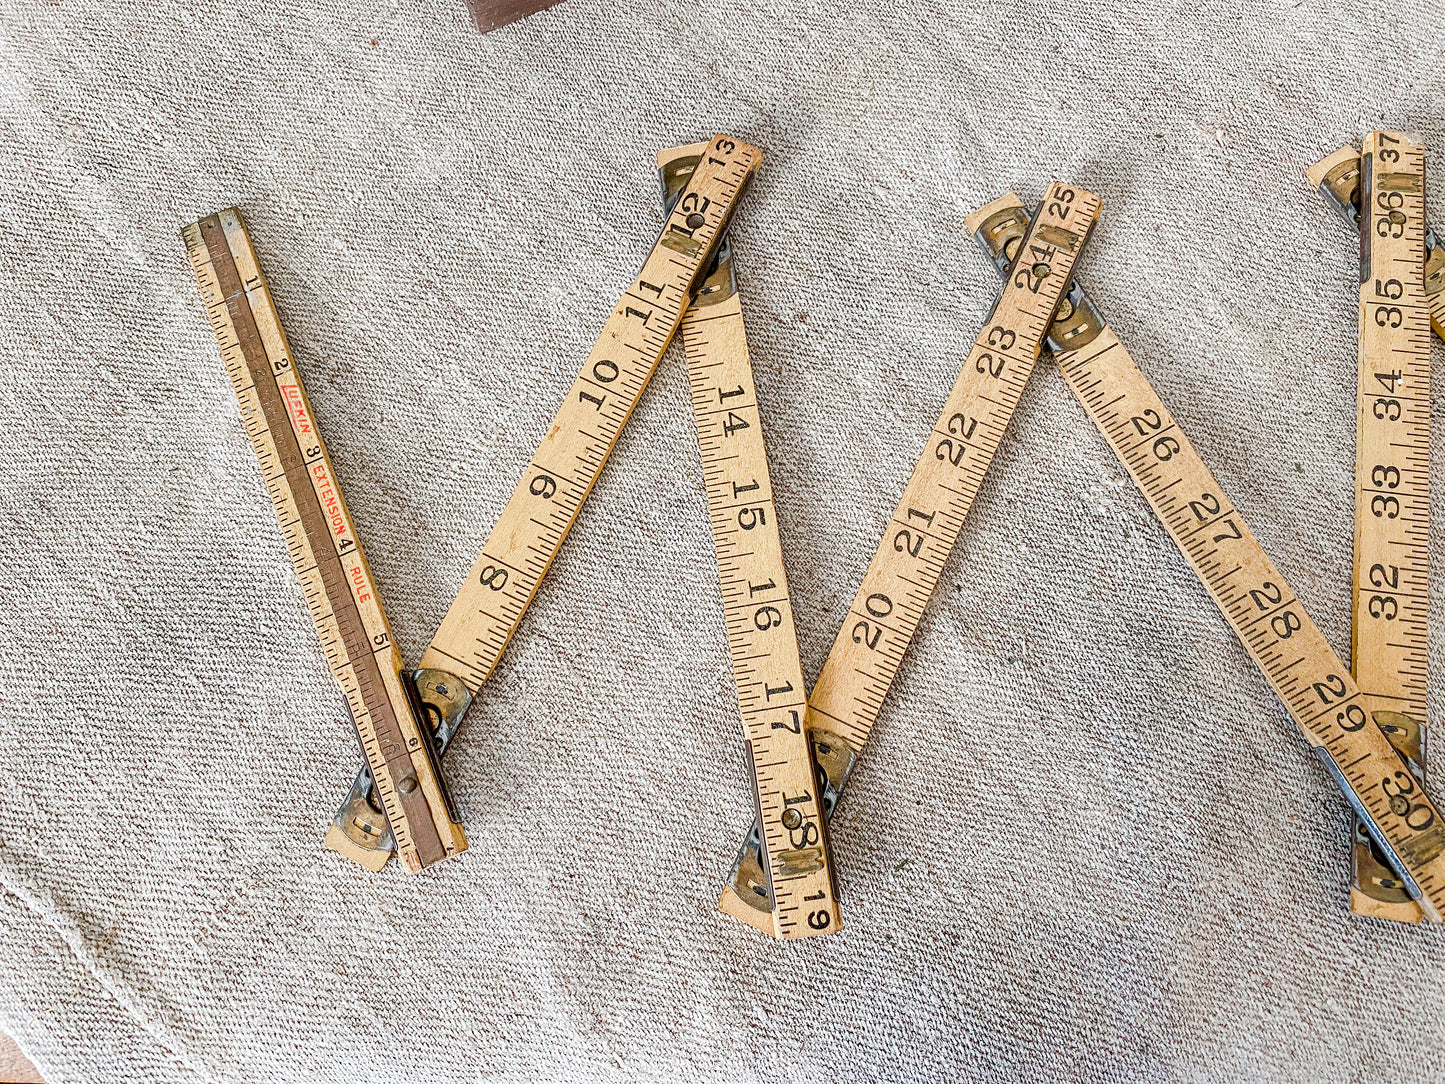 Vintage Folding Ruler, Lufkin Carpenter's Chippy Foldable 72" Wooden Measuring Stick, No. X46